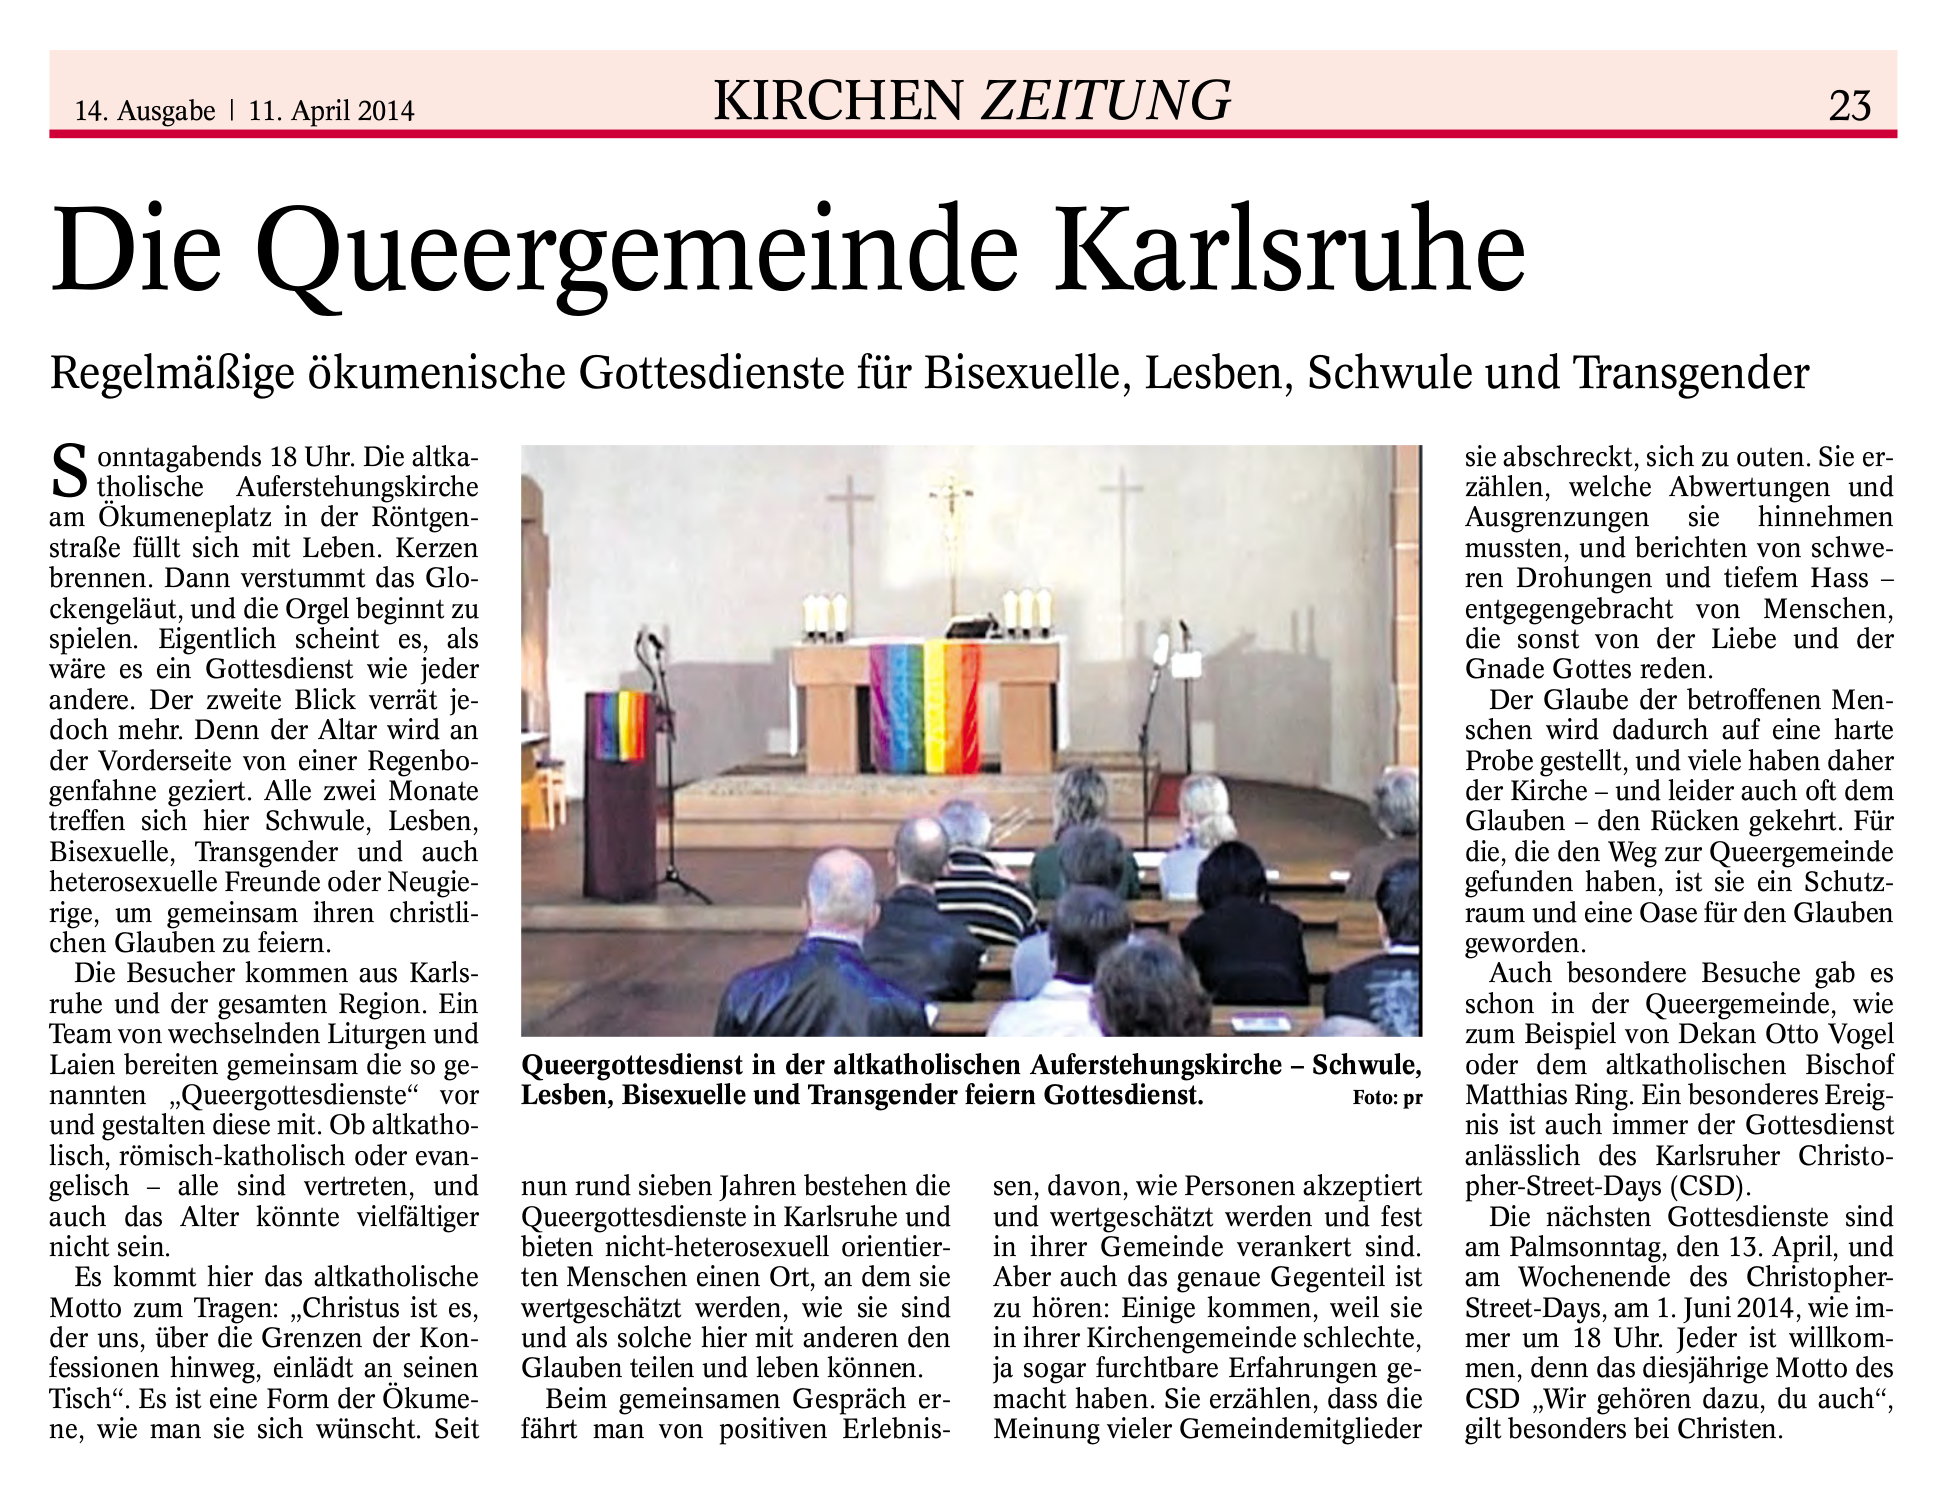 Beitrag über Queergottesdienst KA in der Kirchenzeitung vom 11. April 2014